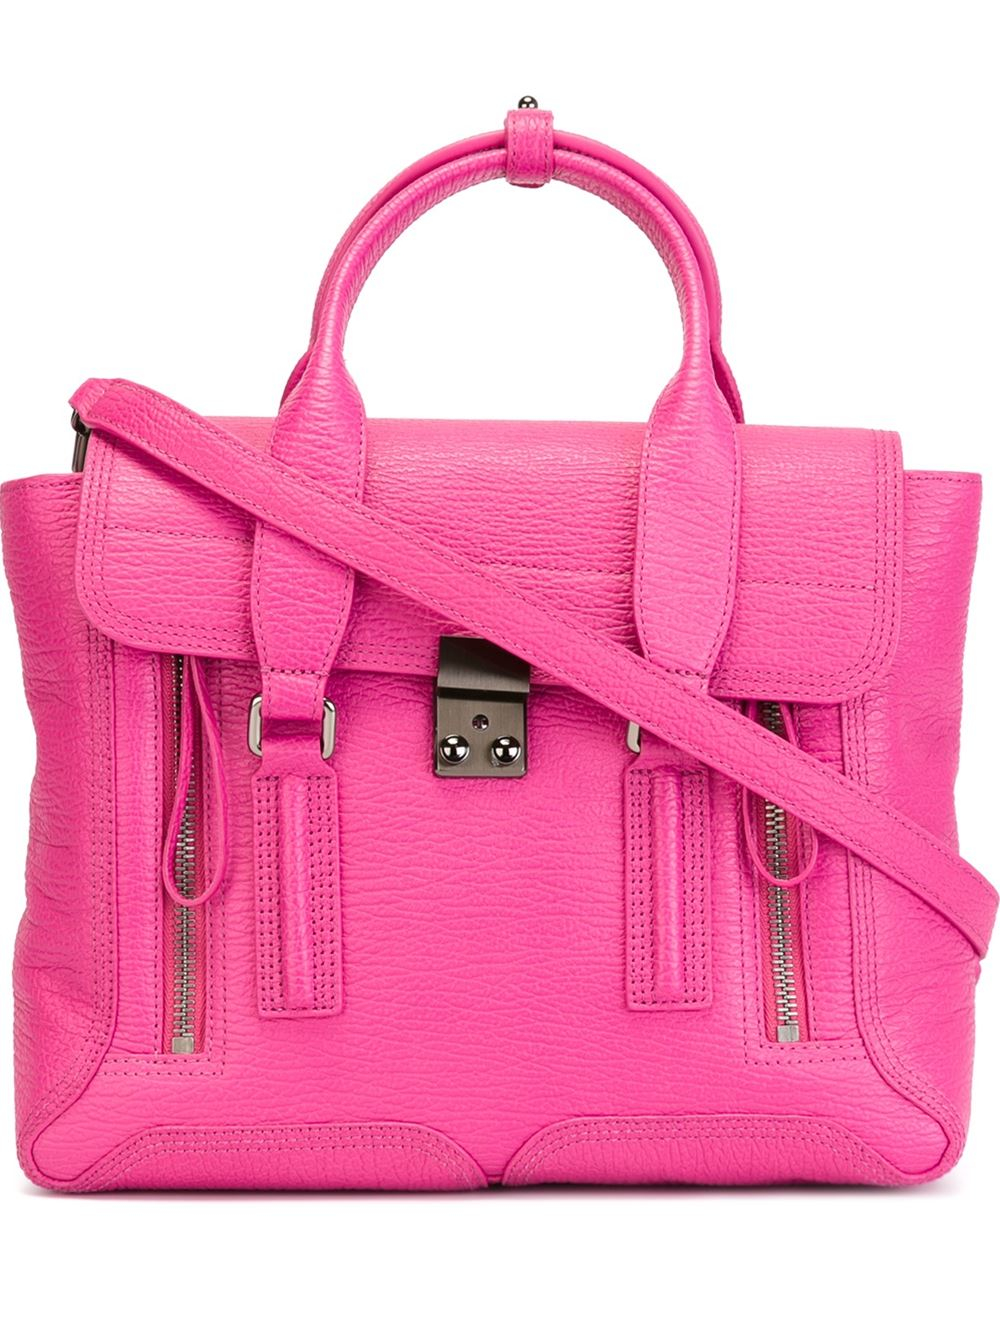 3.1 phillip lim Medium Pashli Bag in Pink | Lyst